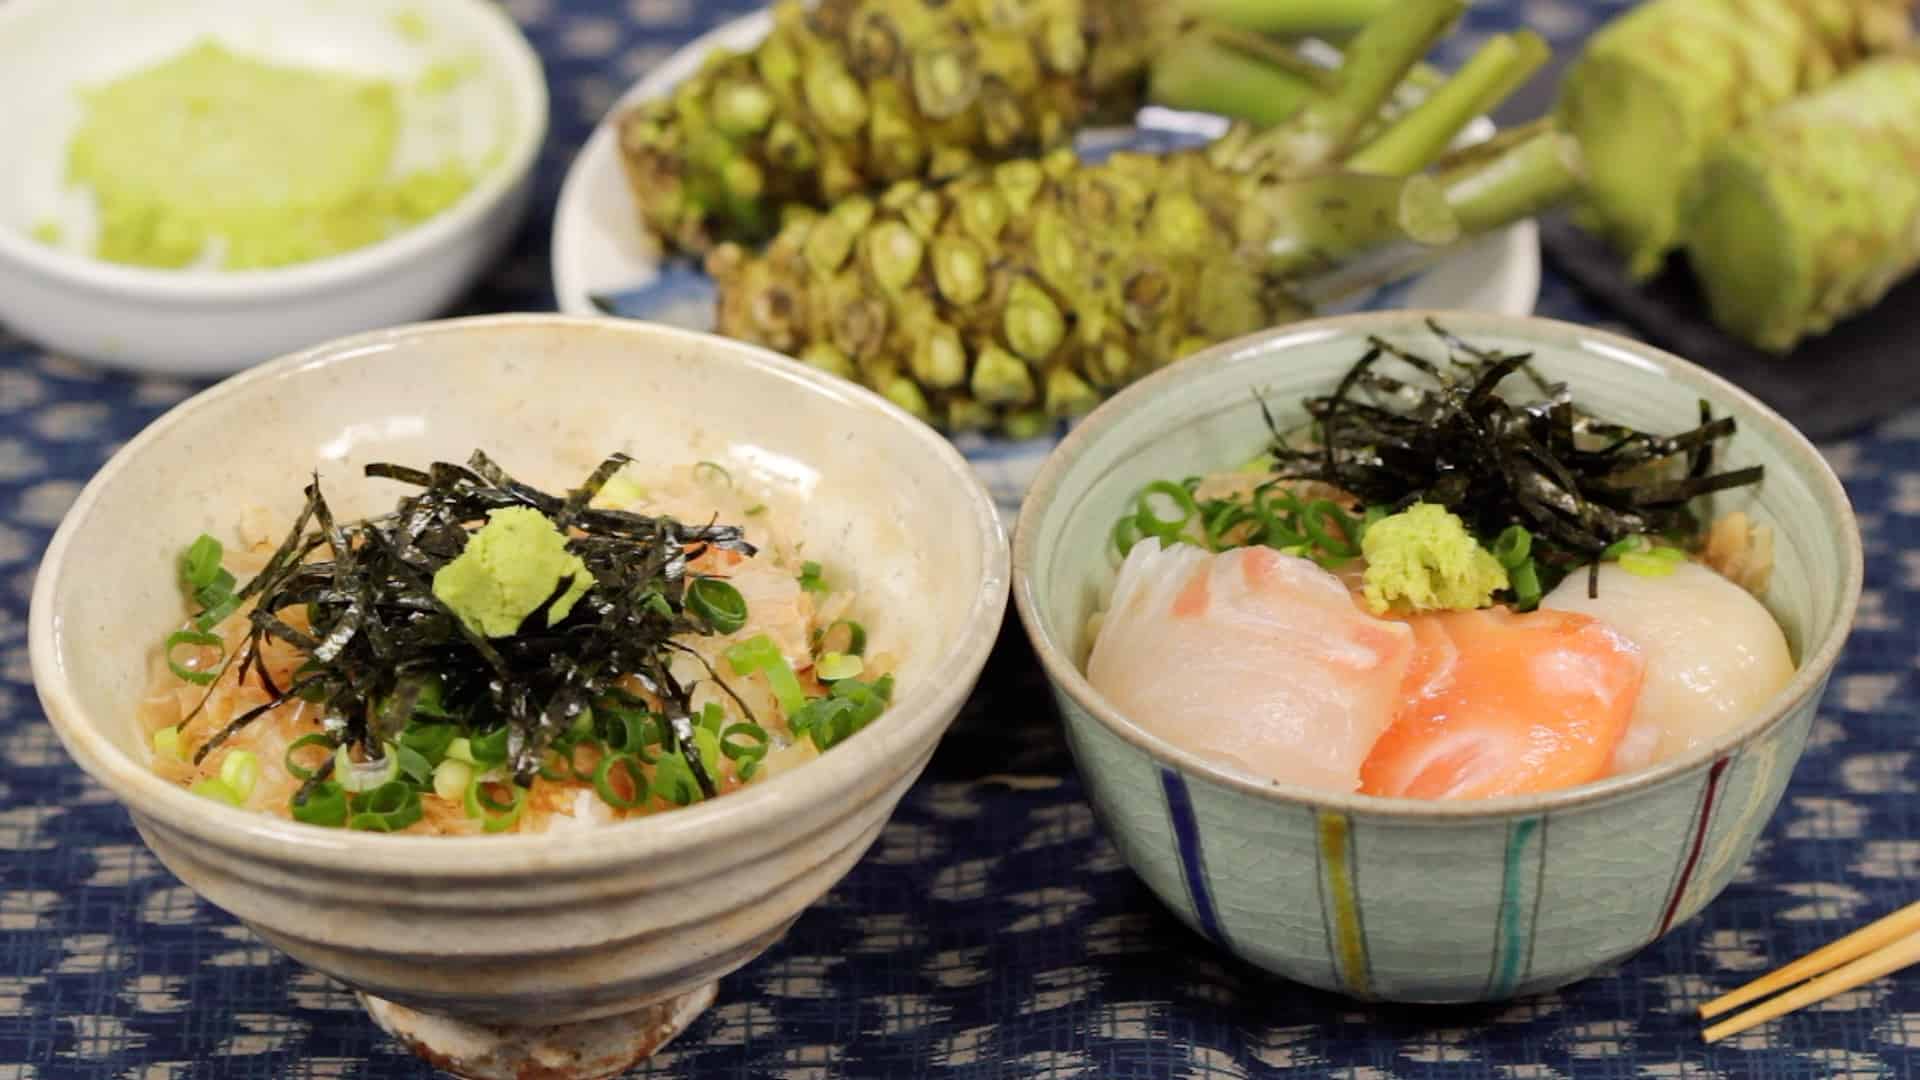 Wasabi - raifort Japonais condiment - recette facile - remede